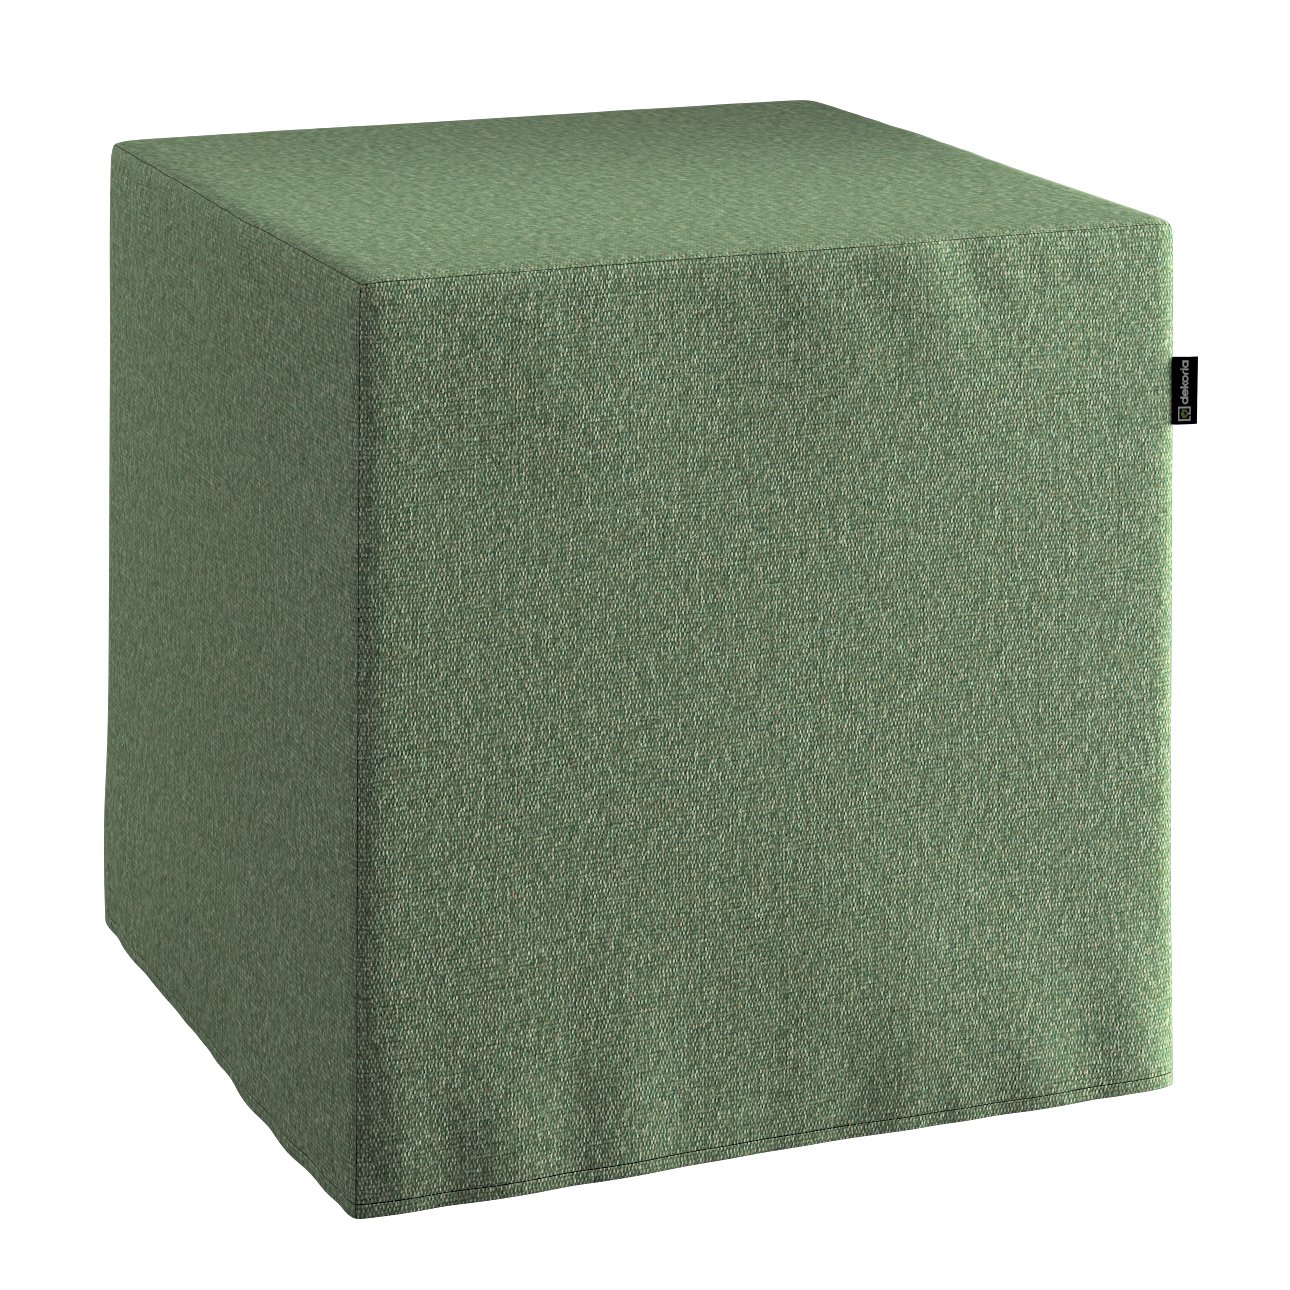 Sitzwürfel aus Kunstleder grün 40x40x40 cm mit PU-Schaumstoff JEFLEX -  DECATHLON